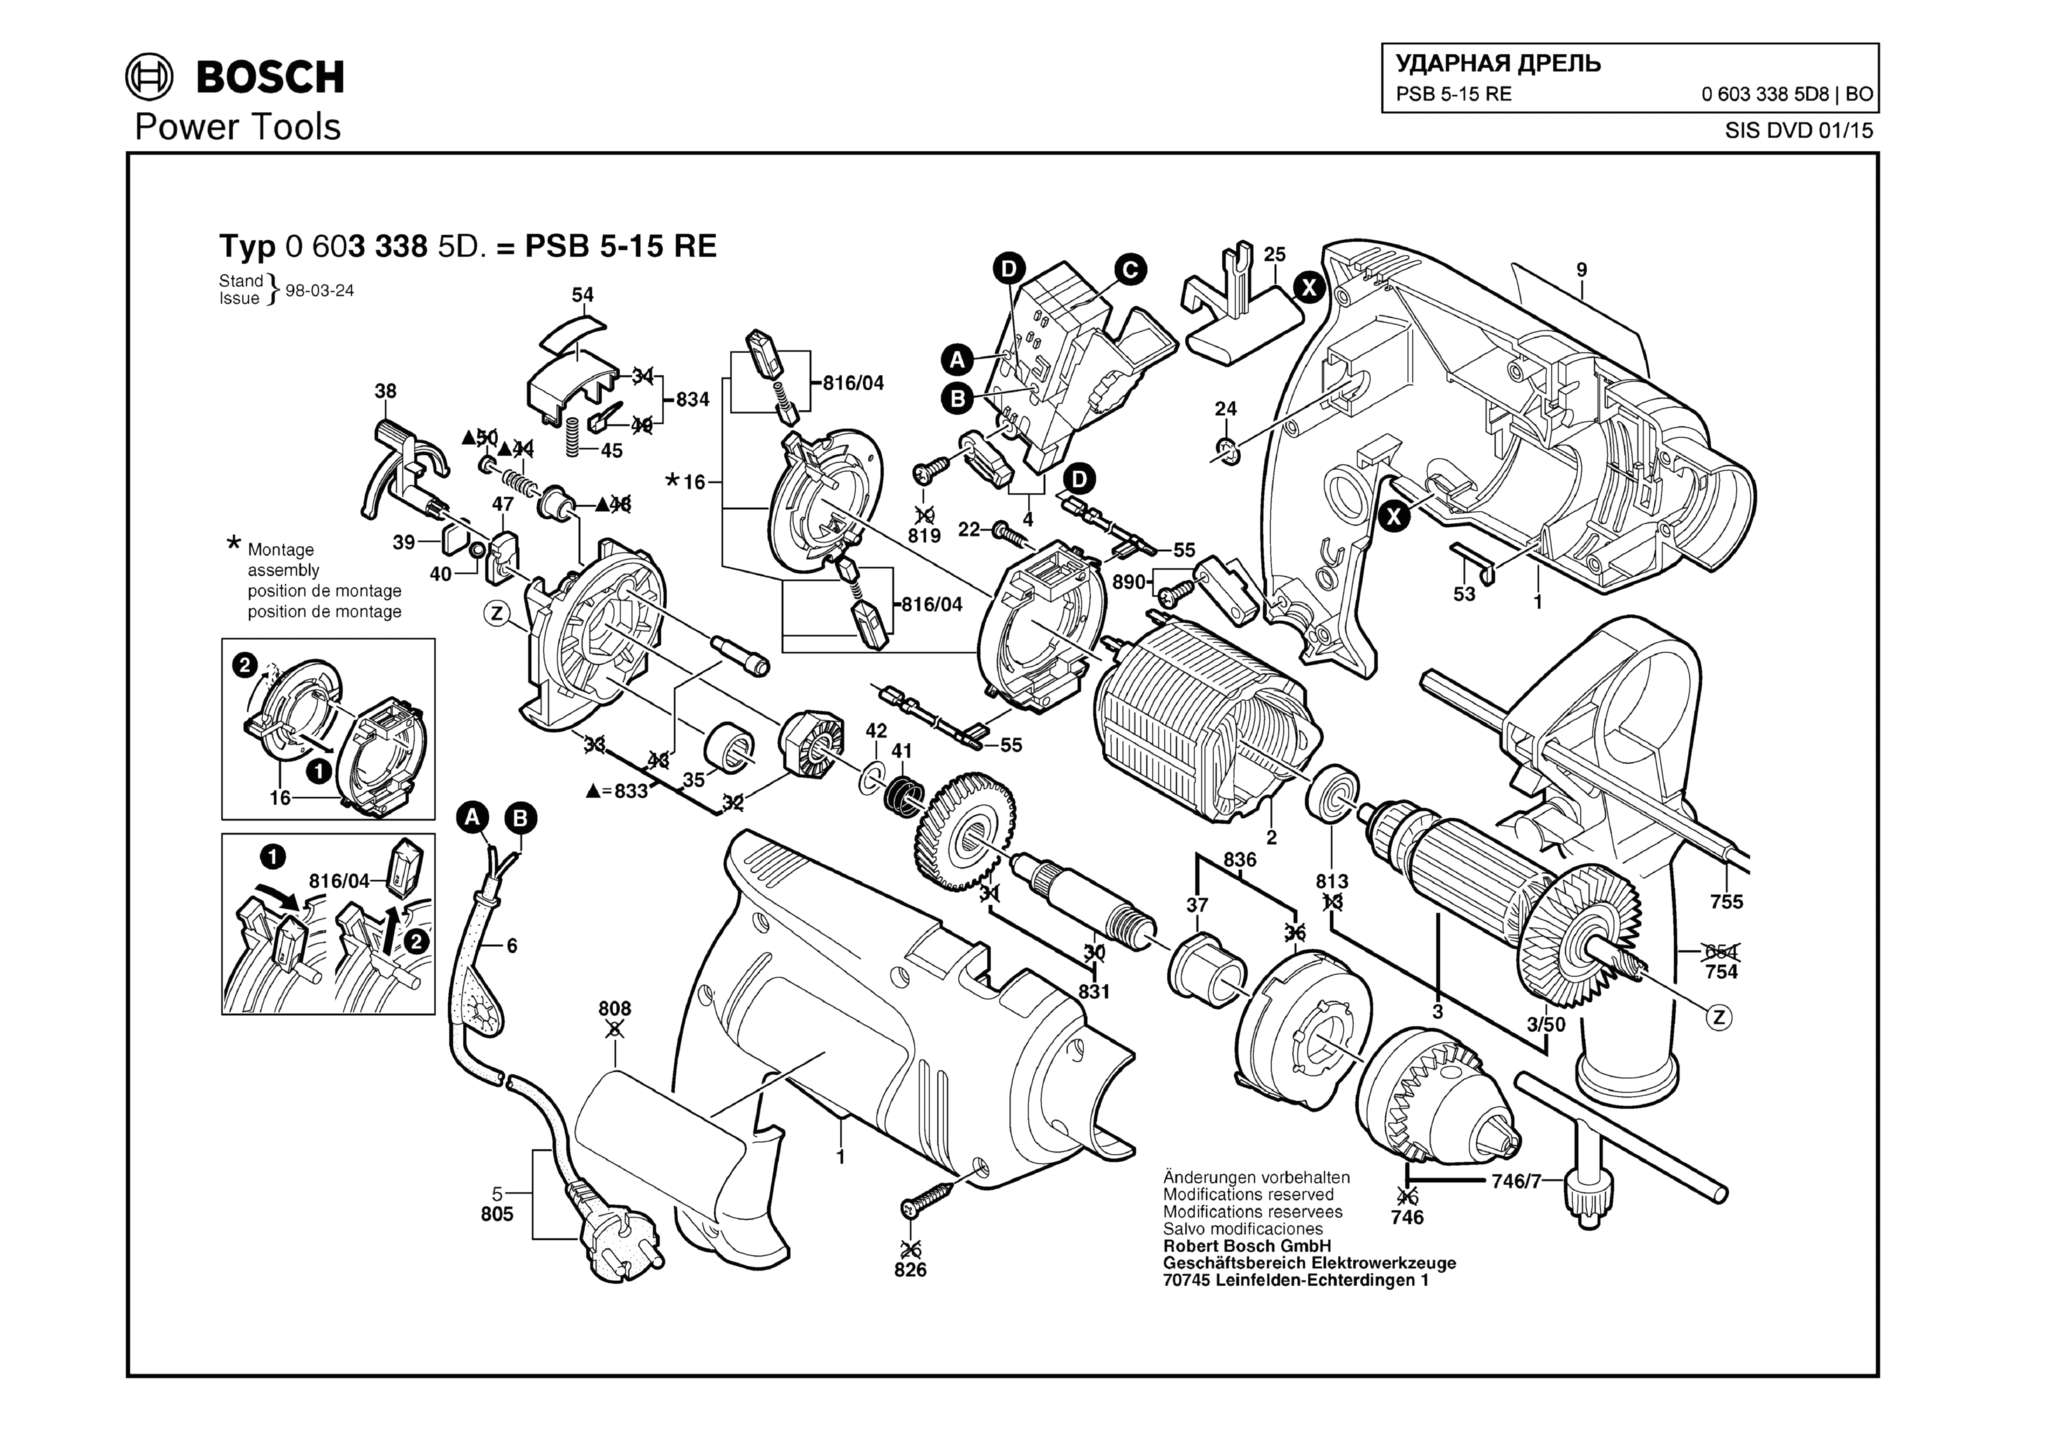 Запчасти, схема и деталировка Bosch PSB 5-15 RE (ТИП 06033385D8)